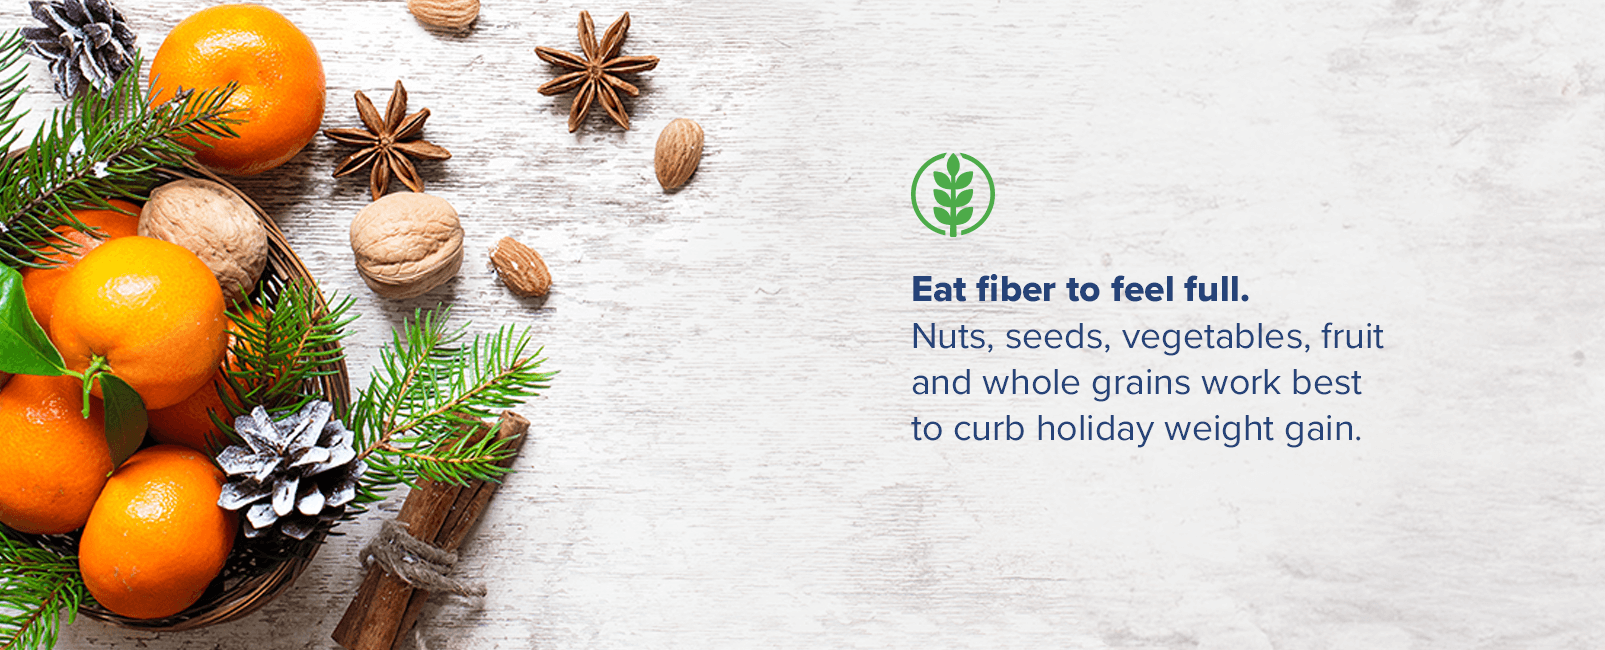 eat fiber to feel full